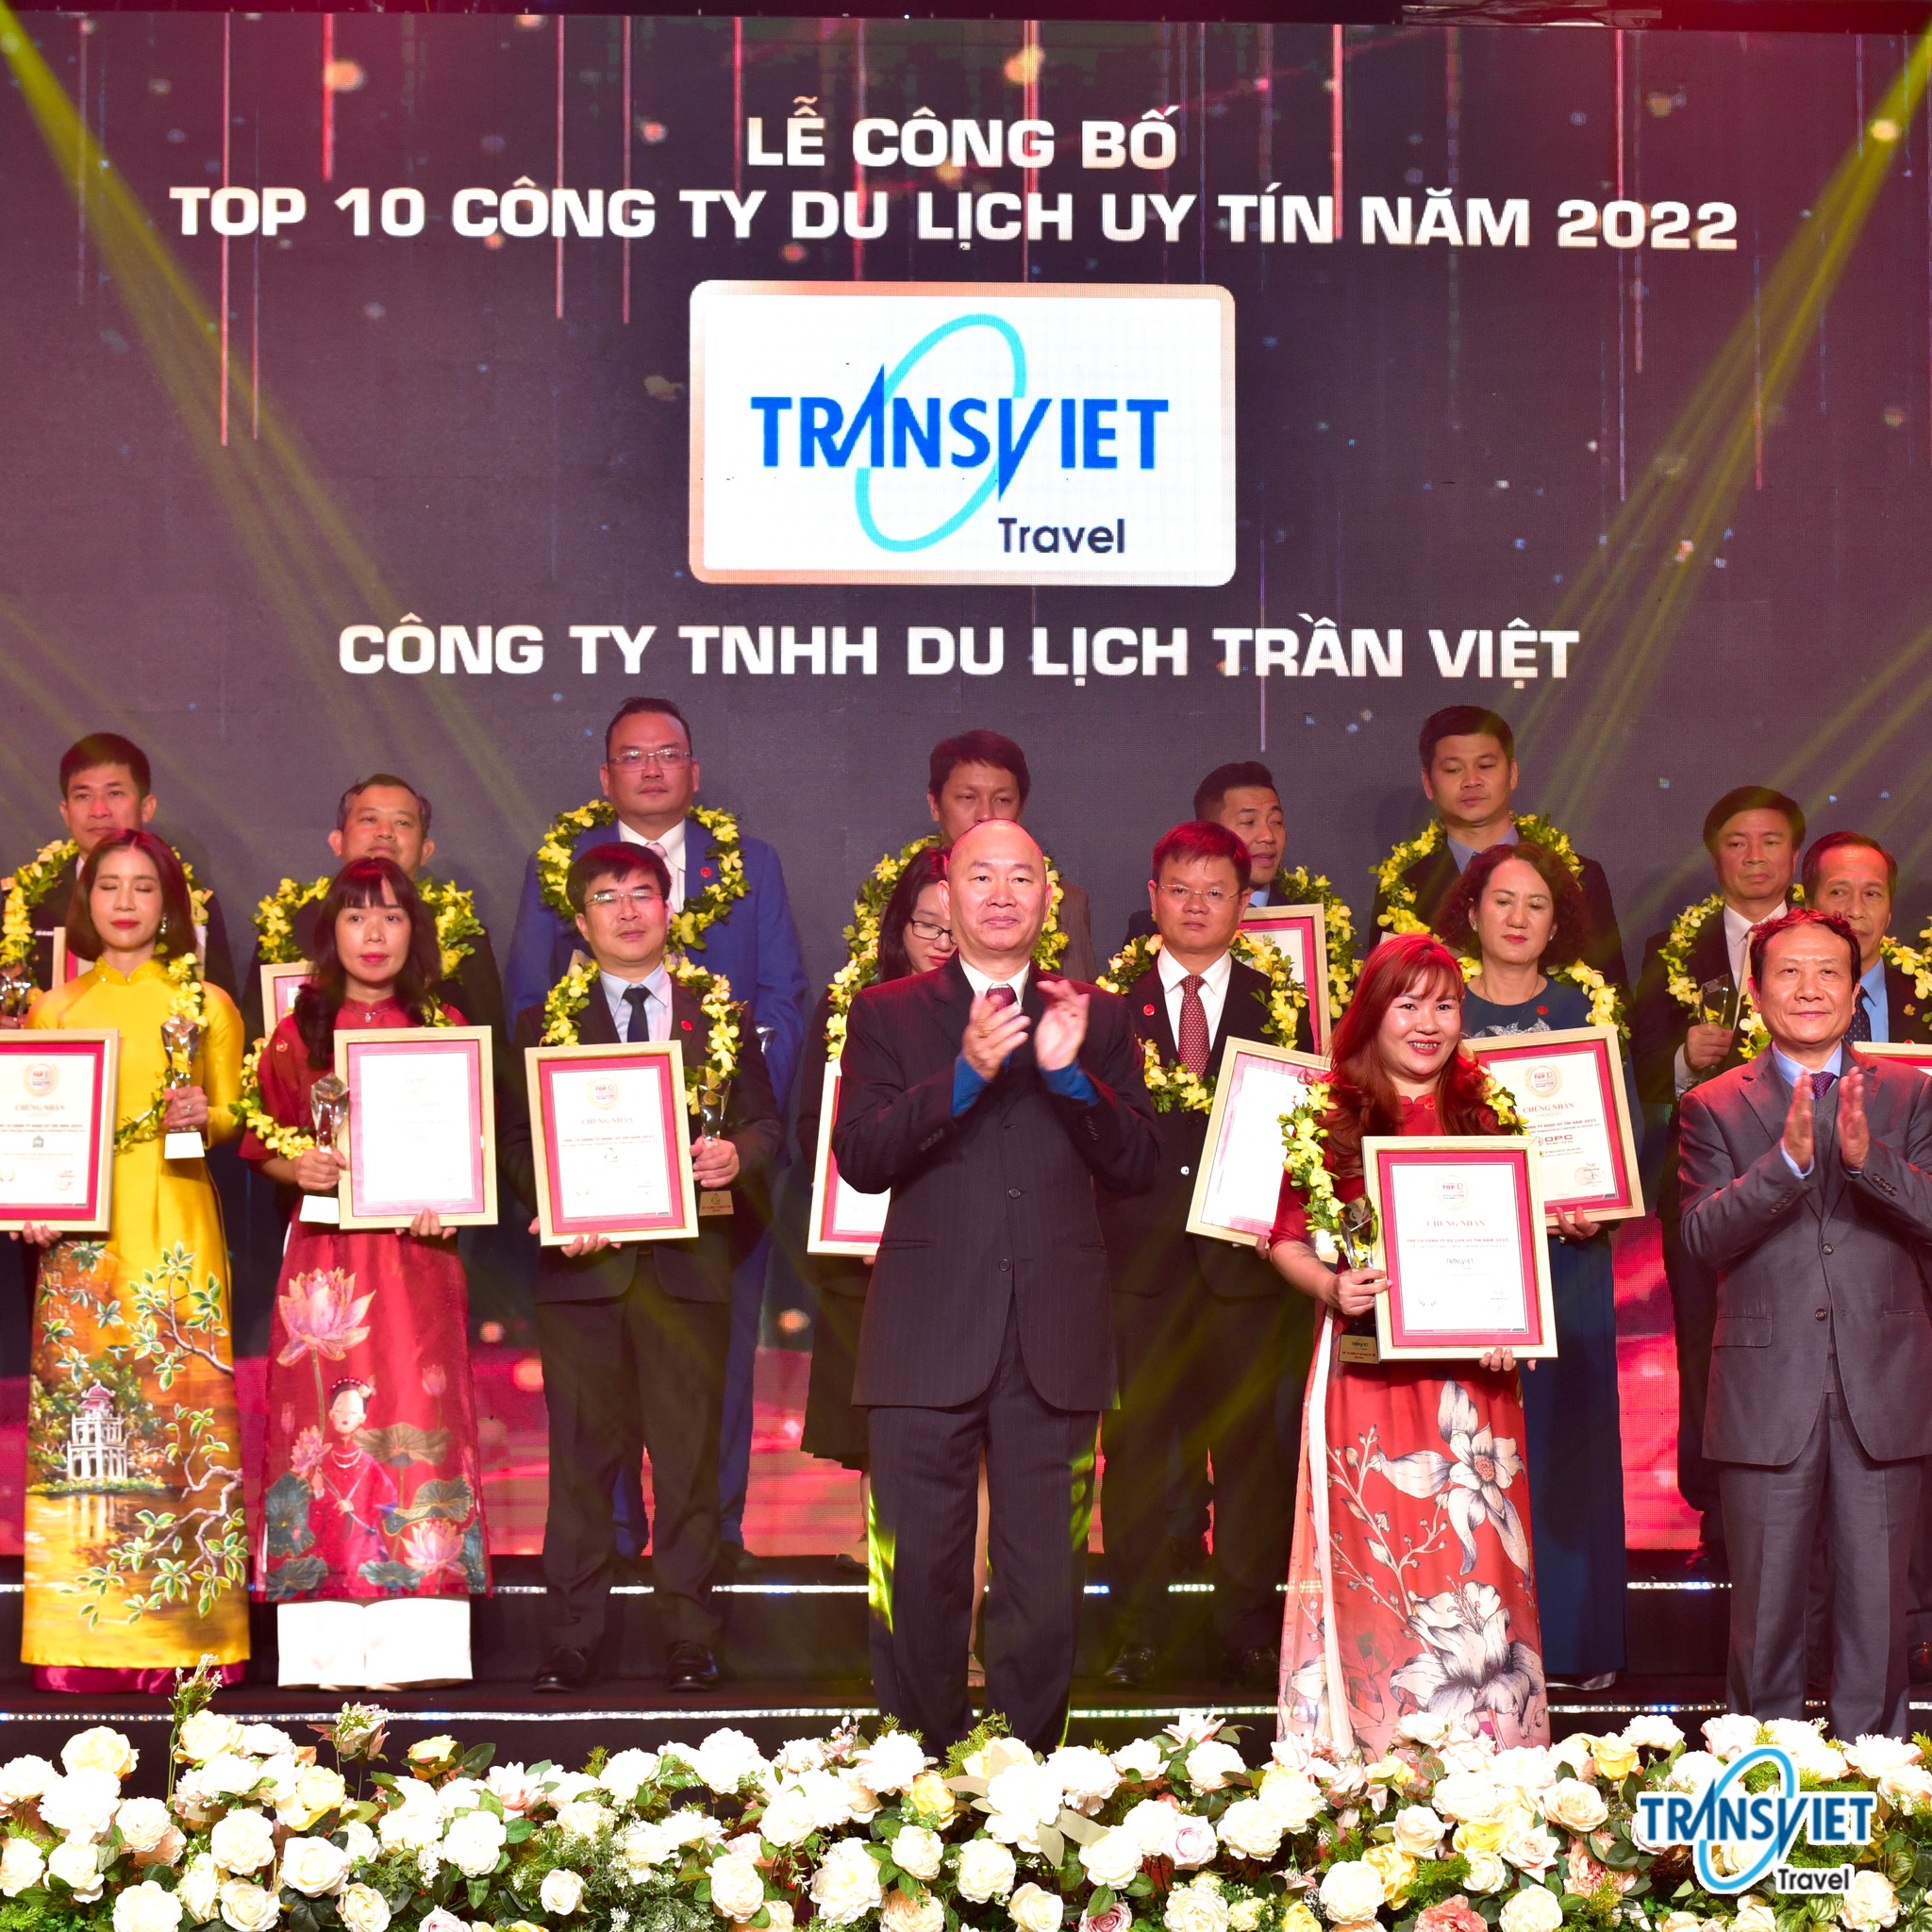 TransViet - Top 10 Công ty Uy tín Ngành du lịch 2022